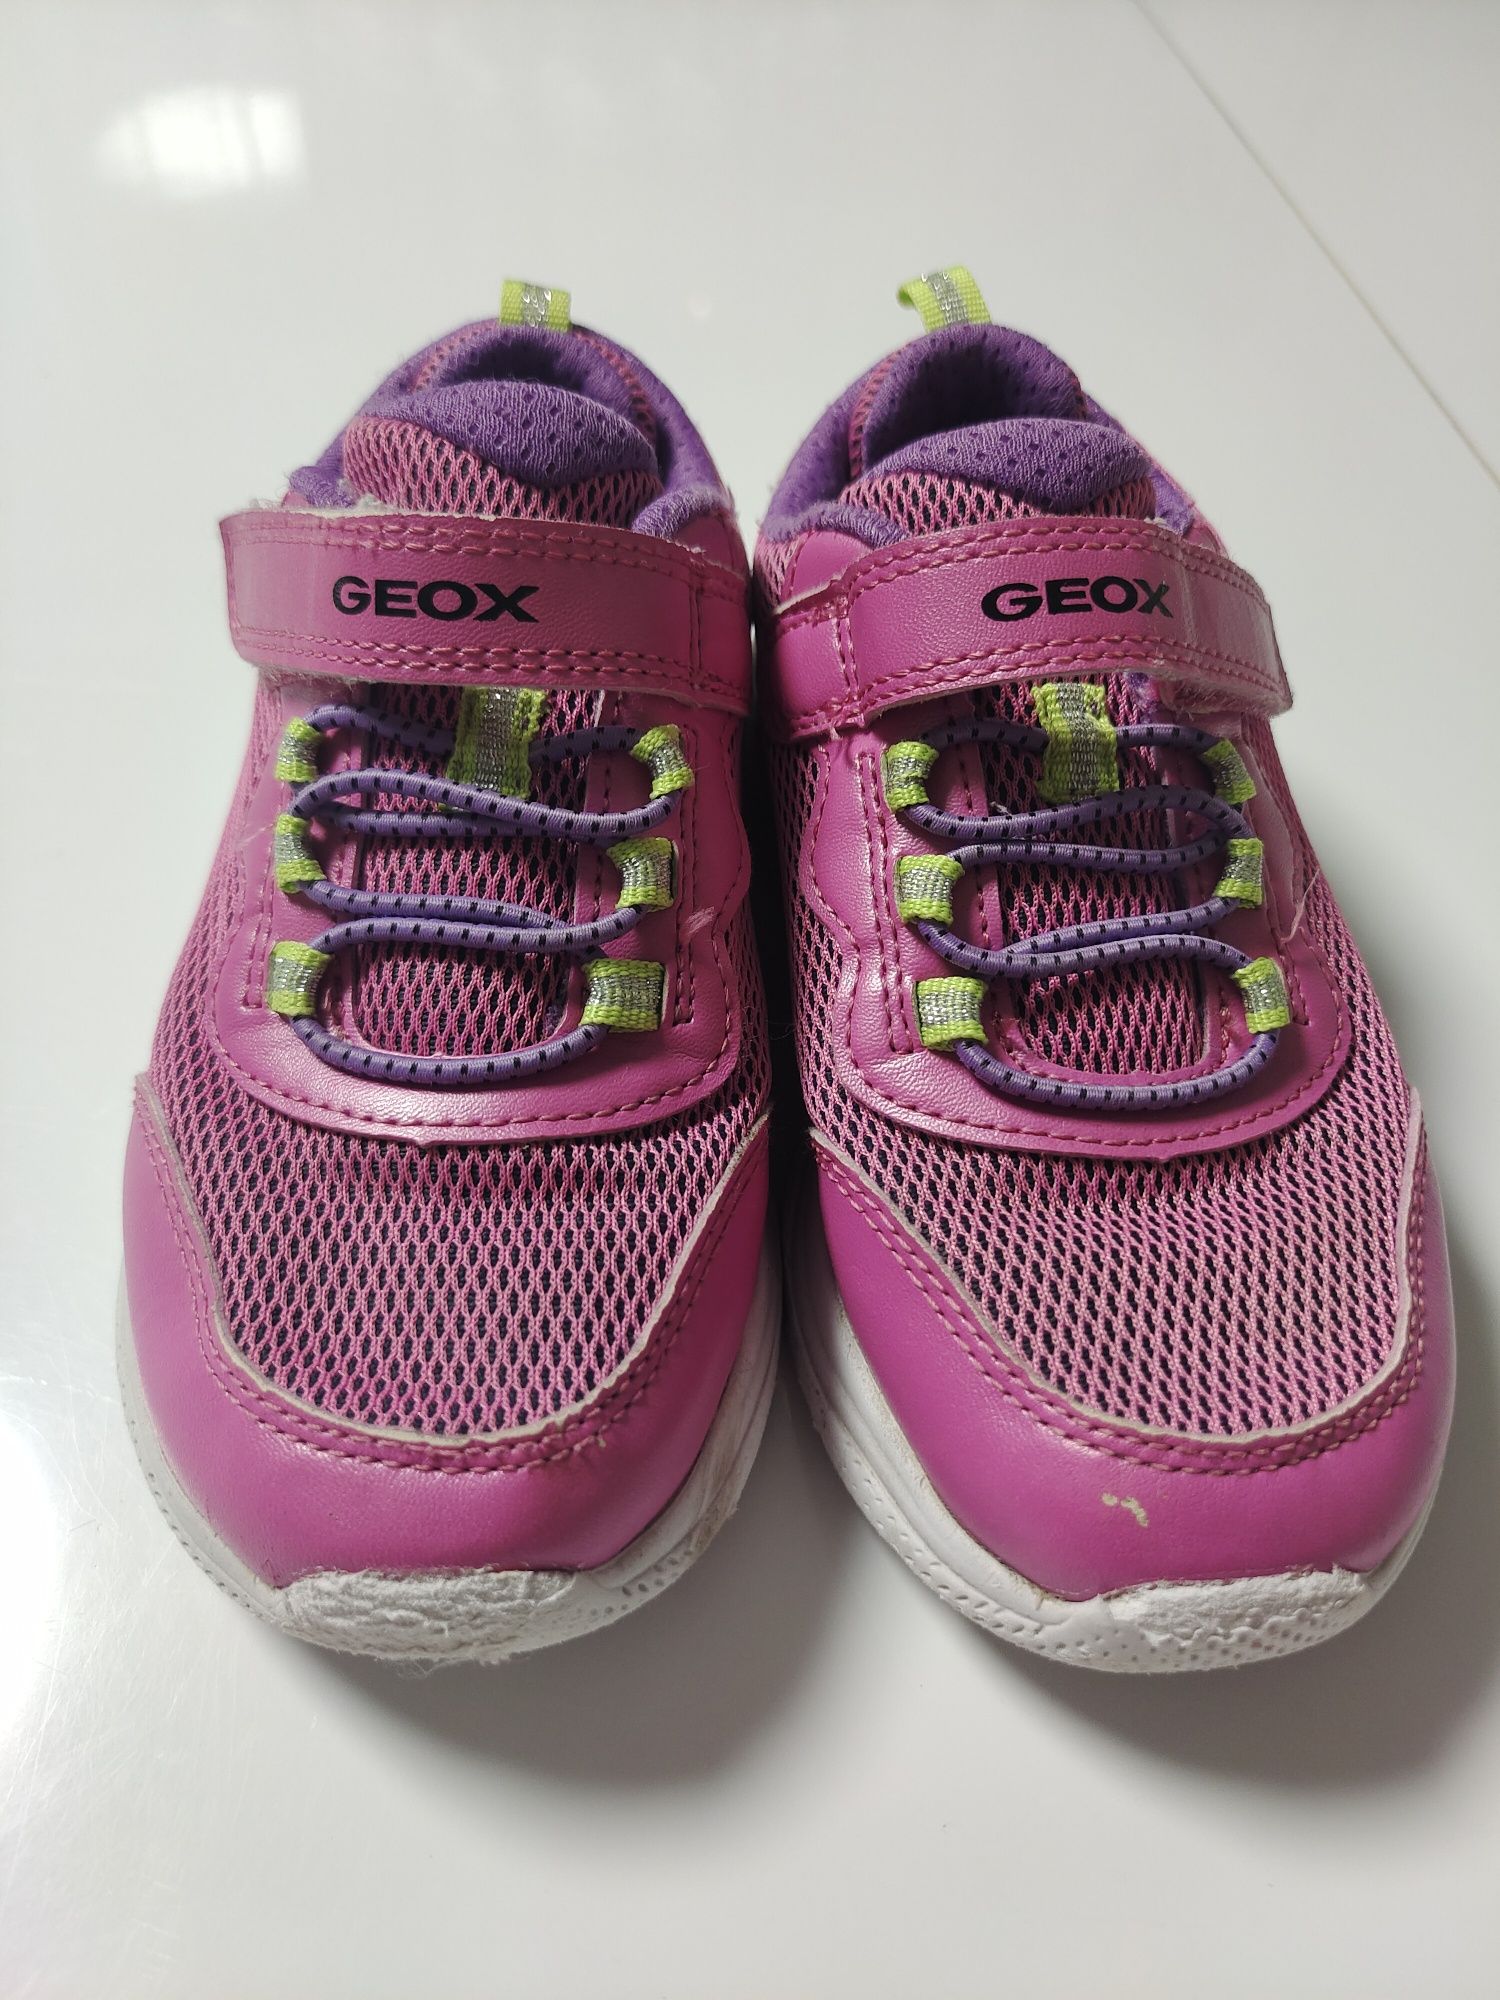 Buty, adidasy Geox, buty dla dziewczynki różowo fioletowe, buty Bartek